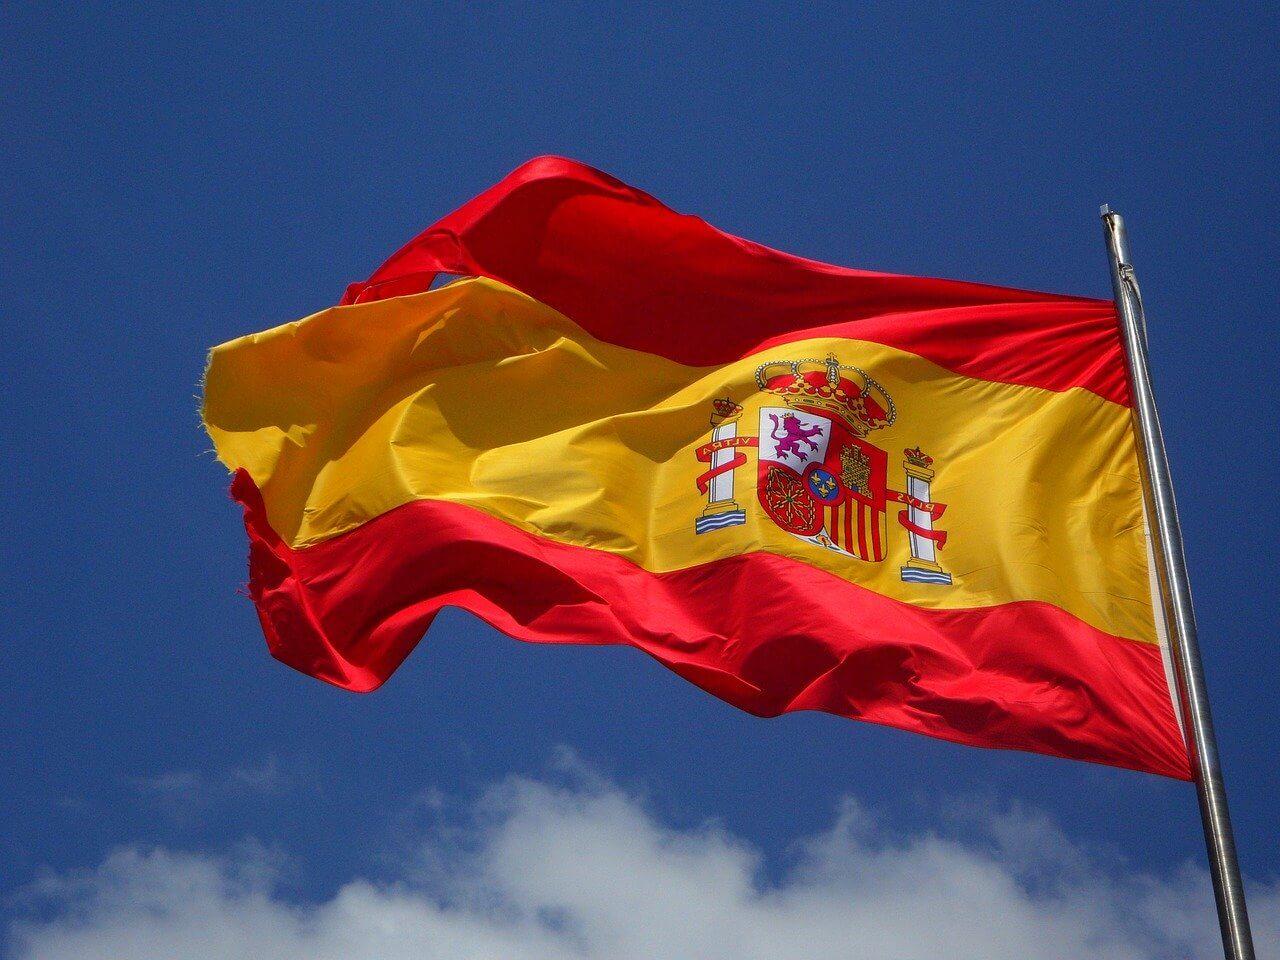 スペイン旅行1週間でかかる費用の目安 予算 バルセロナ マドリード とりあえず 旅